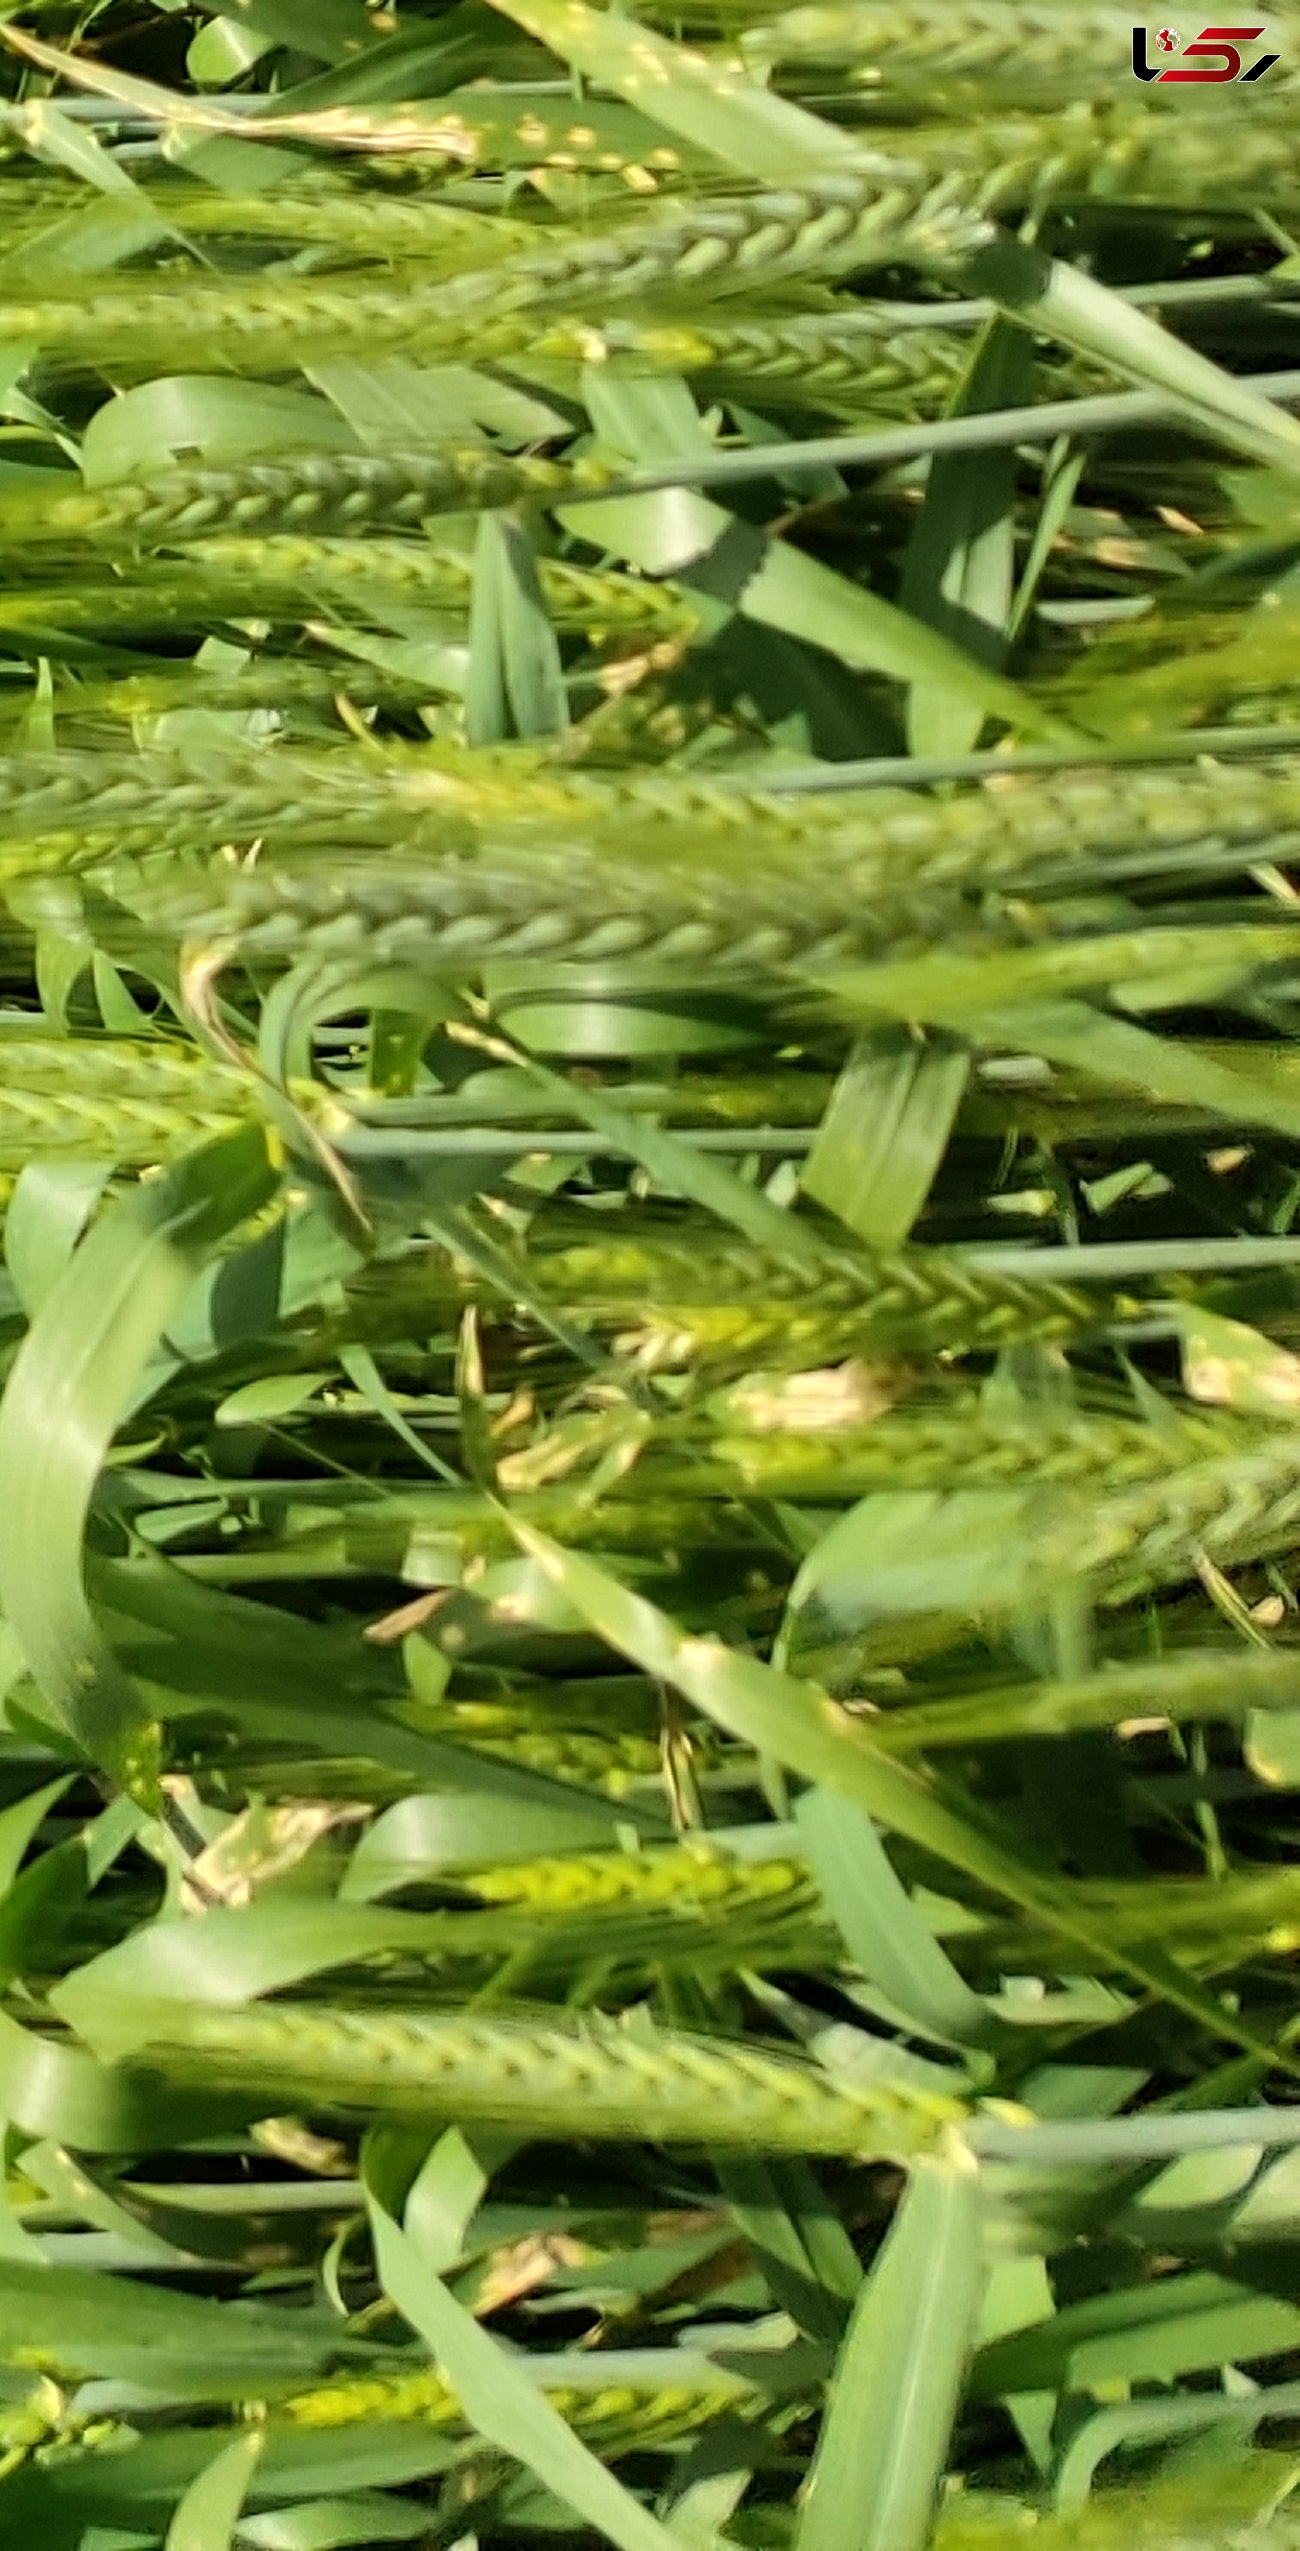 رشد ۴۷ درصدی گندم آبی در استان لرستان